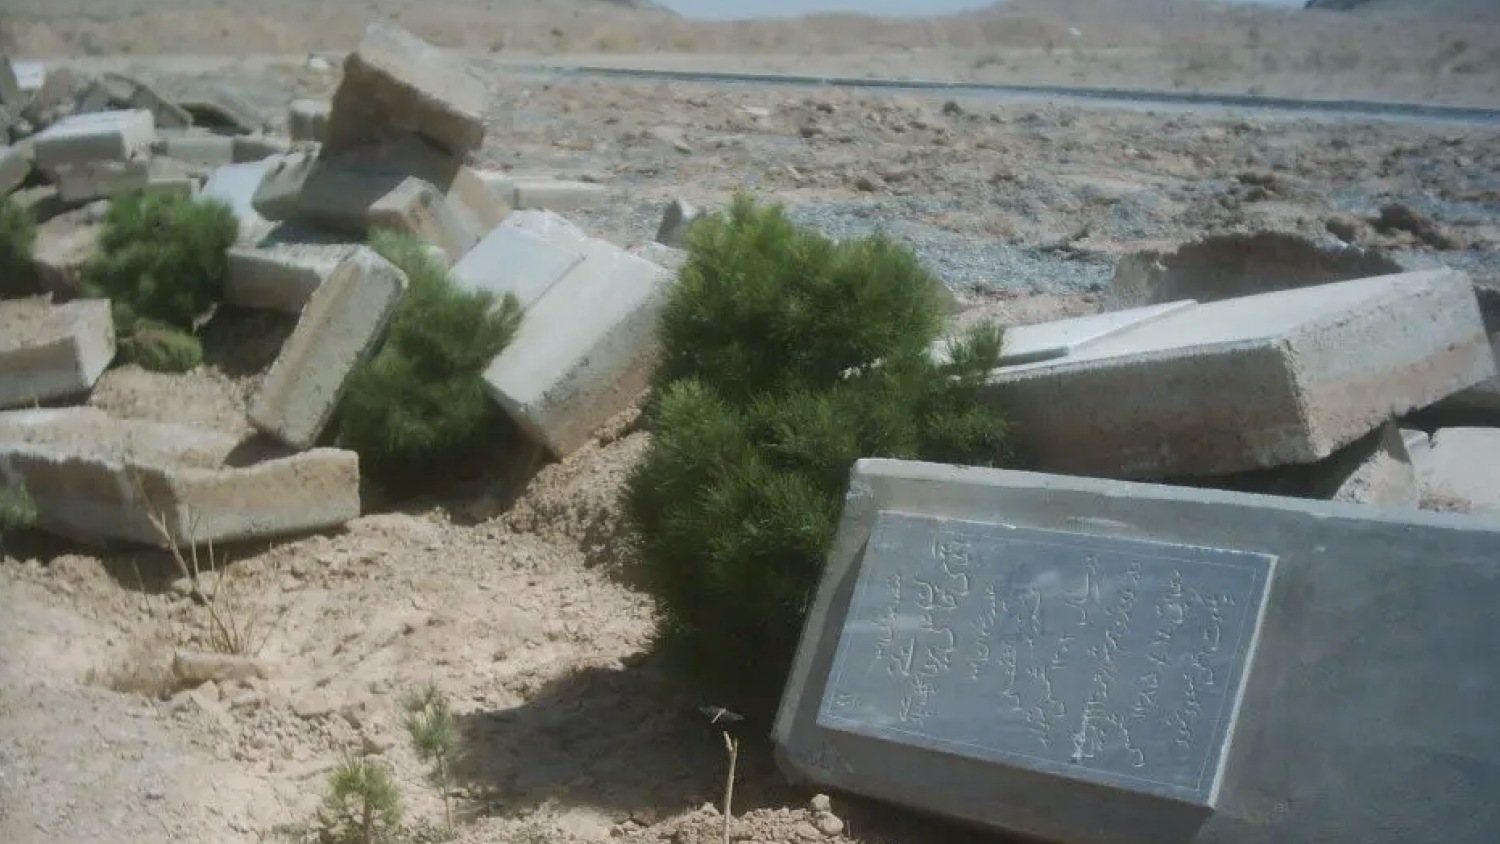 تتعرض مقابر البهائيين في أنحاء إيران إلى التخريب. الصورة وزعتها منظمة هيومن رايتس ووتش